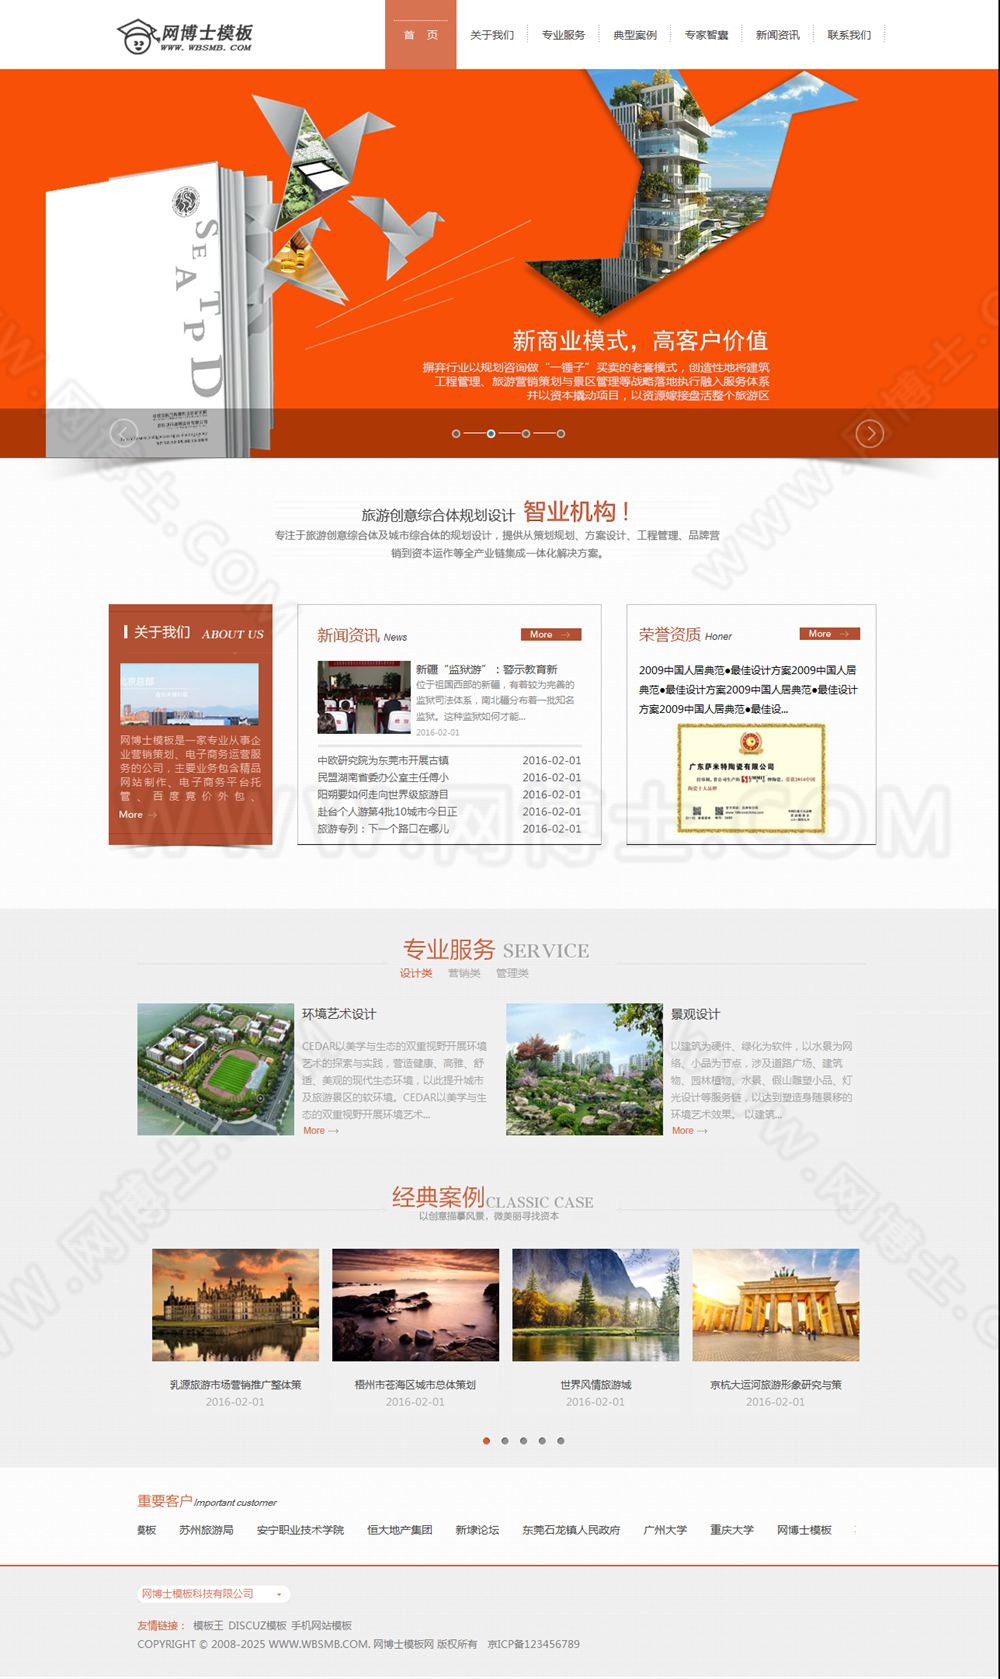 设计规划类旅游规划设计研究院类网站